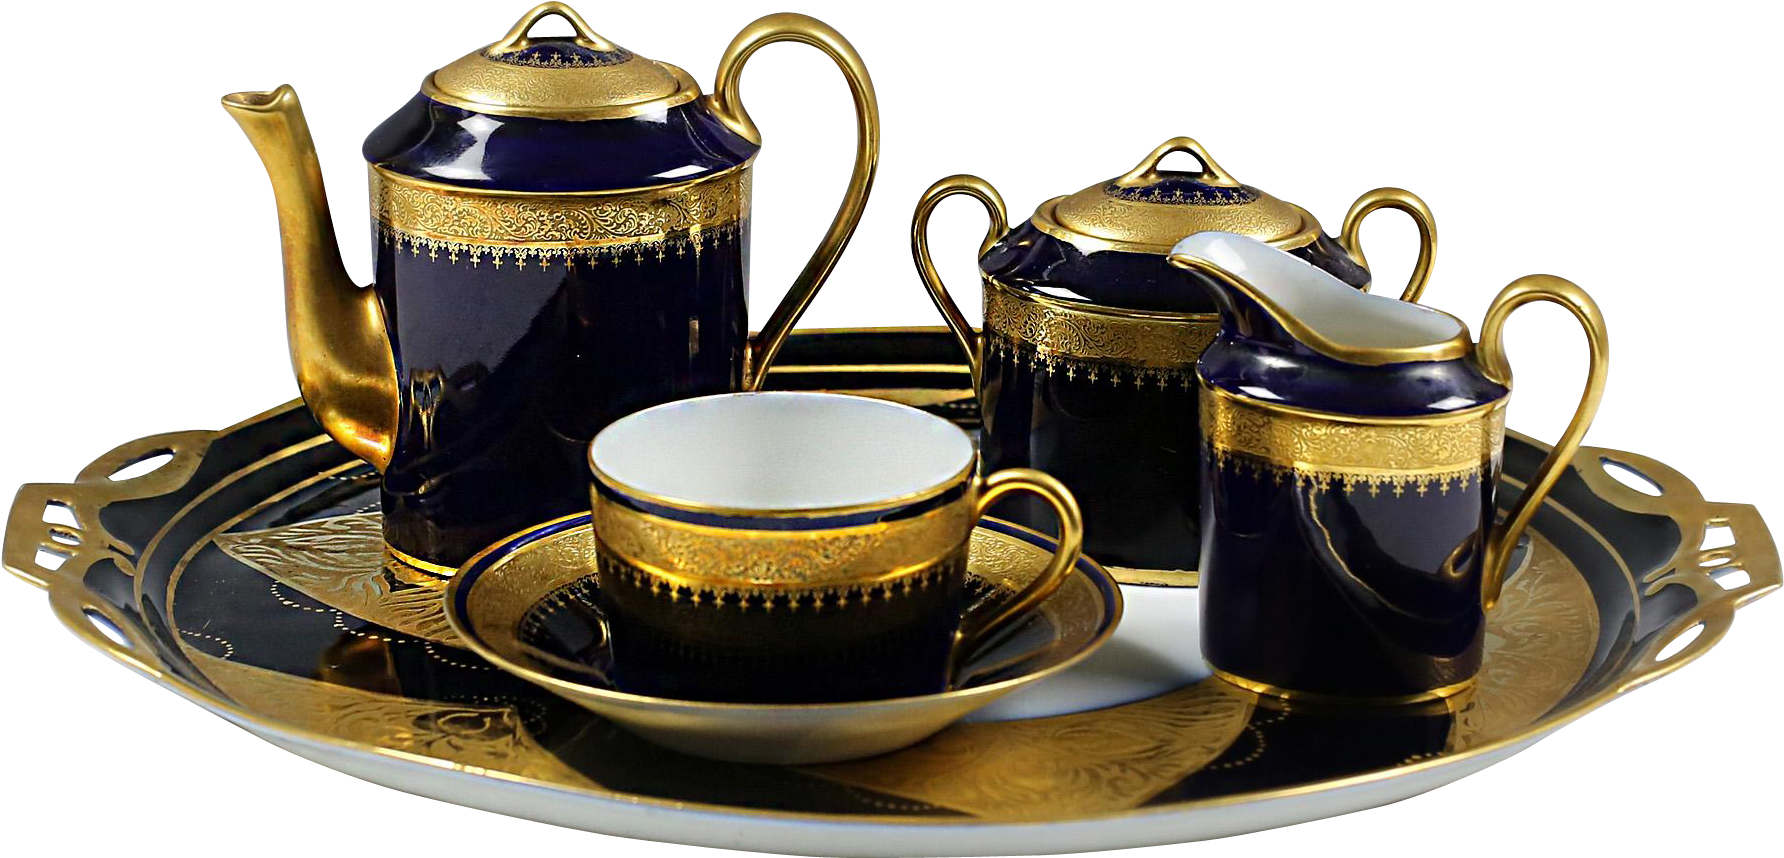 Tea Set Background PNG Image